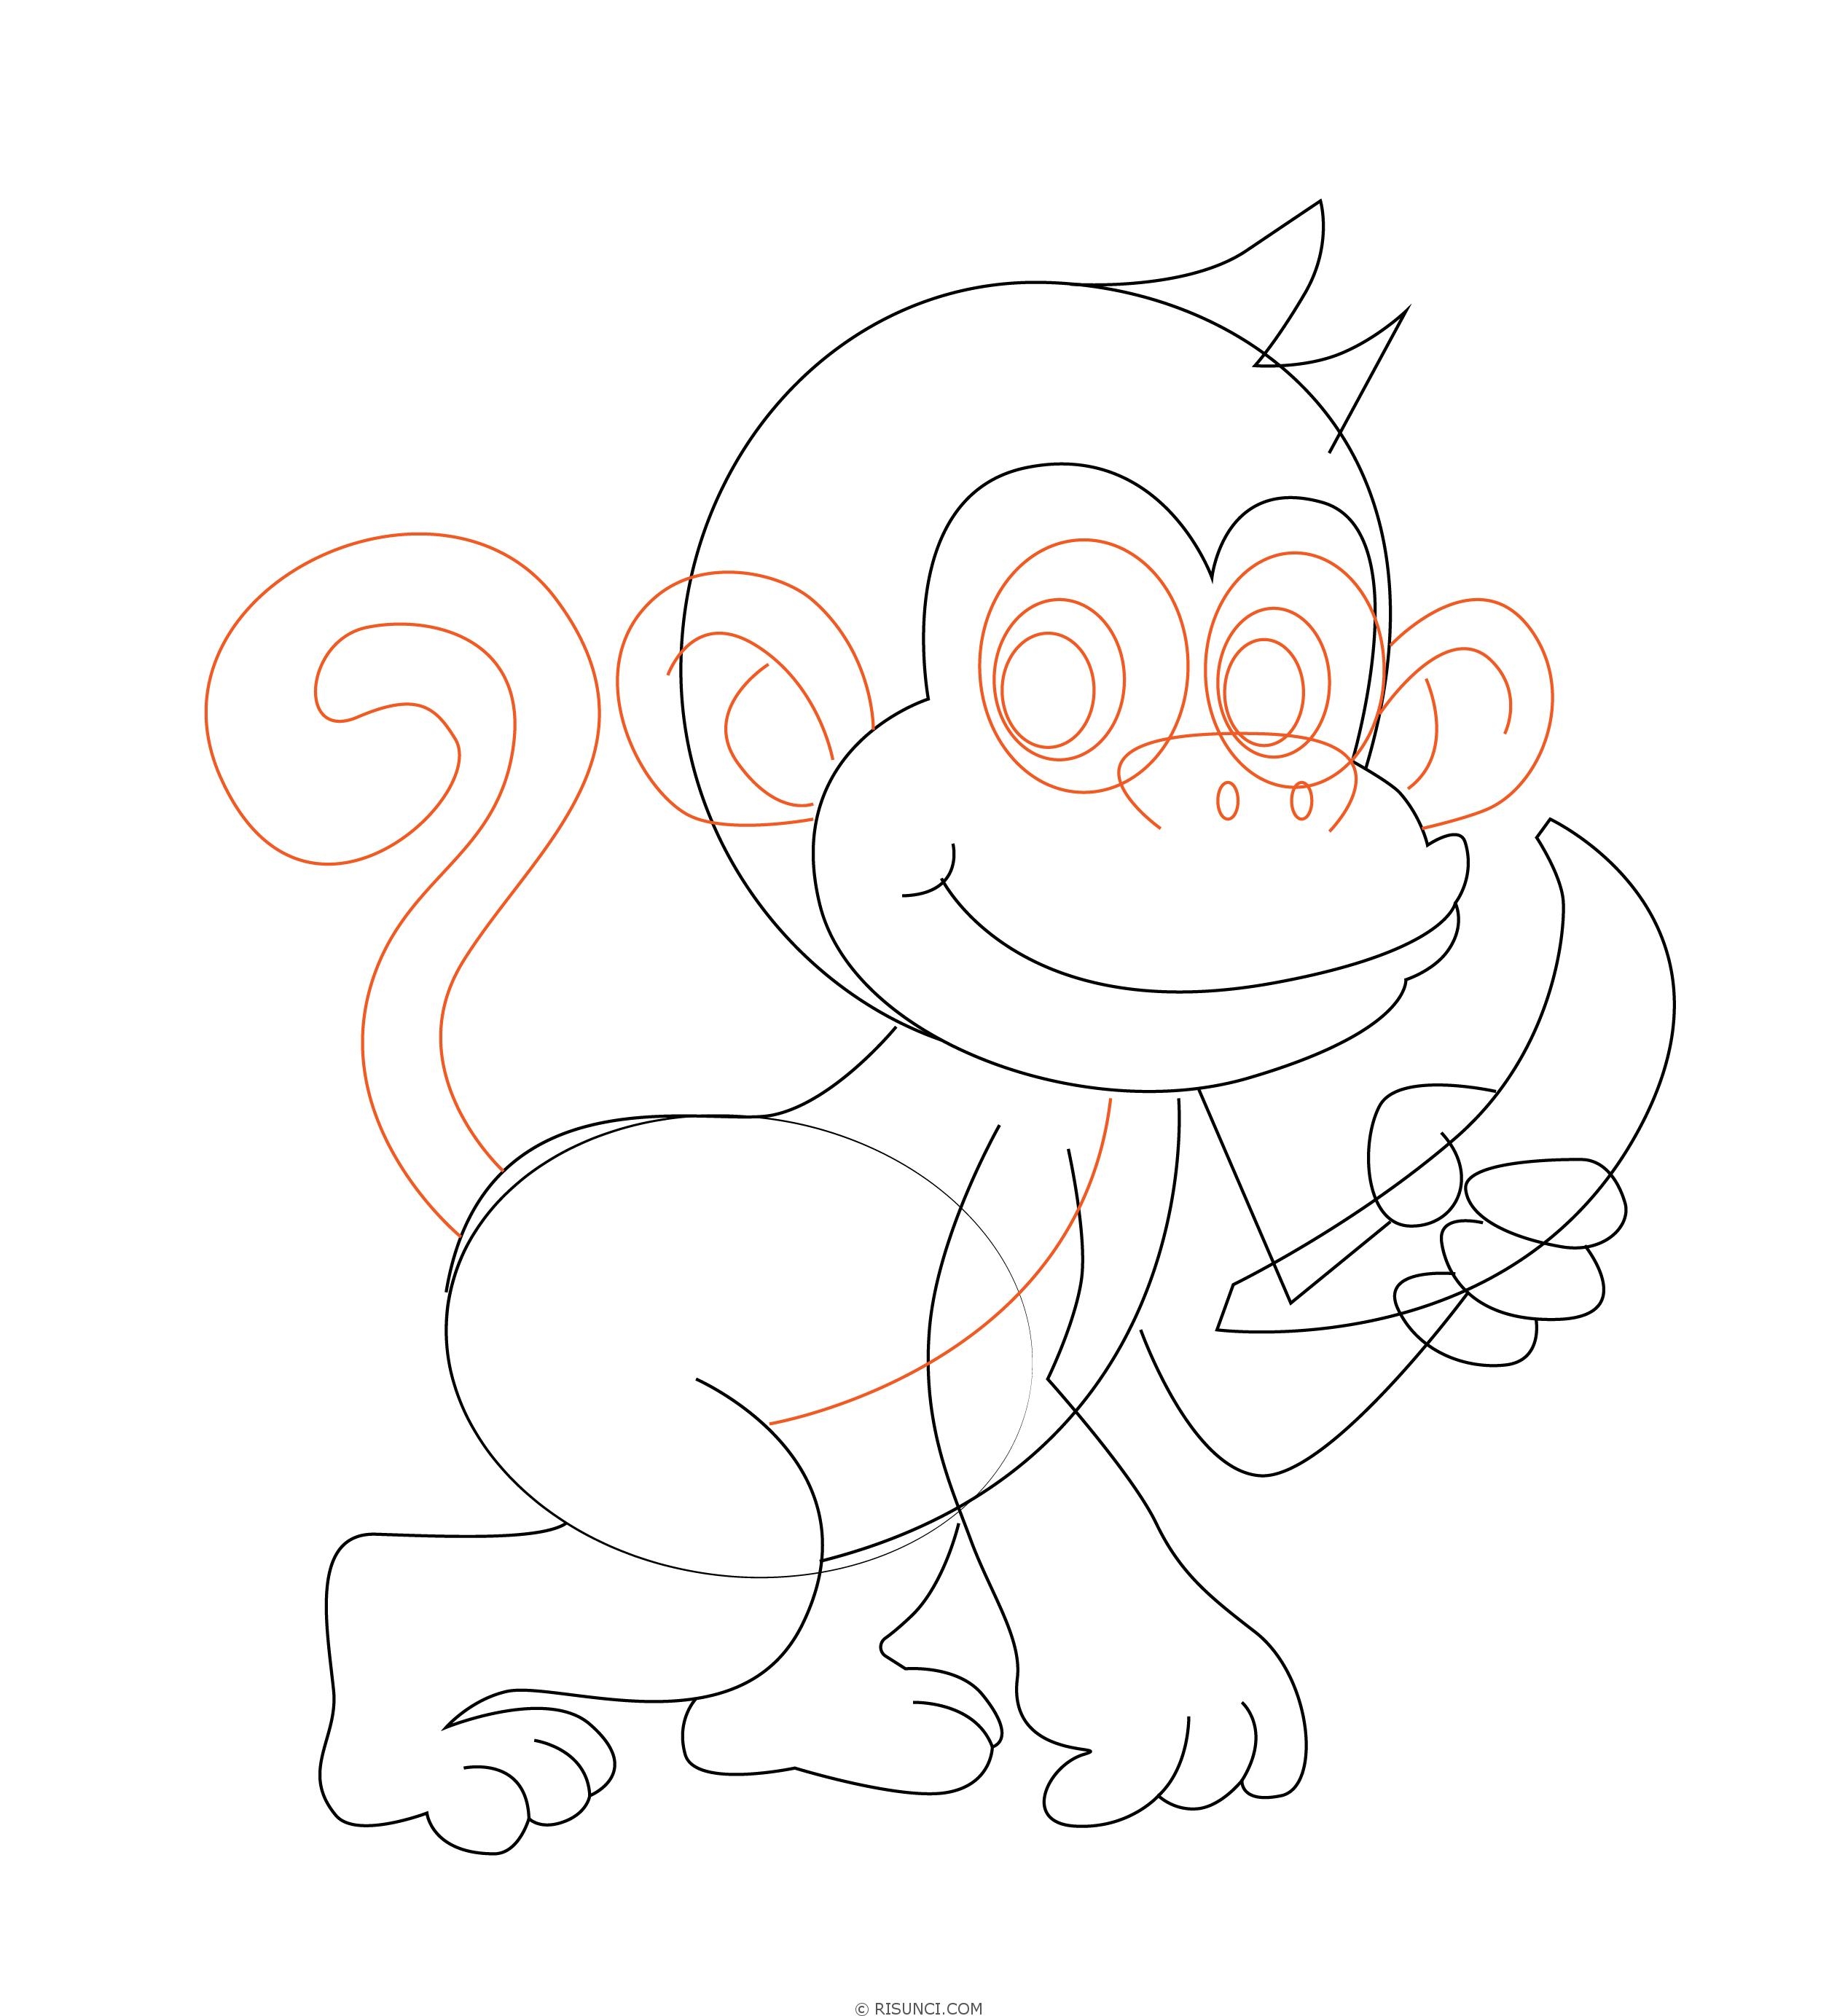 Как нарисовать мультяшную обезьяну